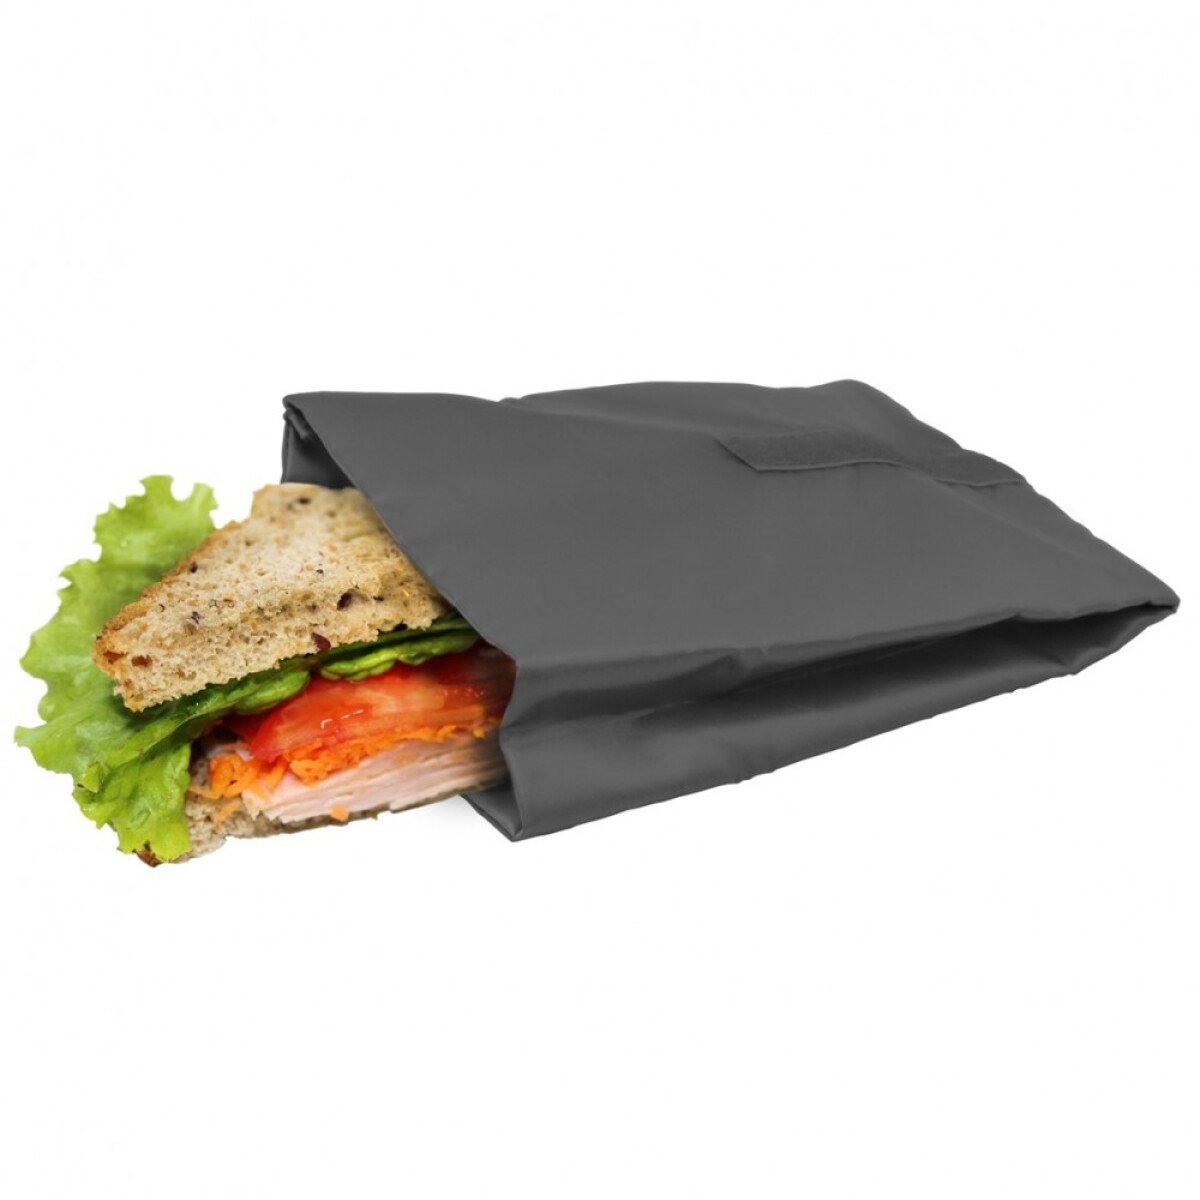 Nerthus Джоб / чанта за сандвичи и храна - цвят сив